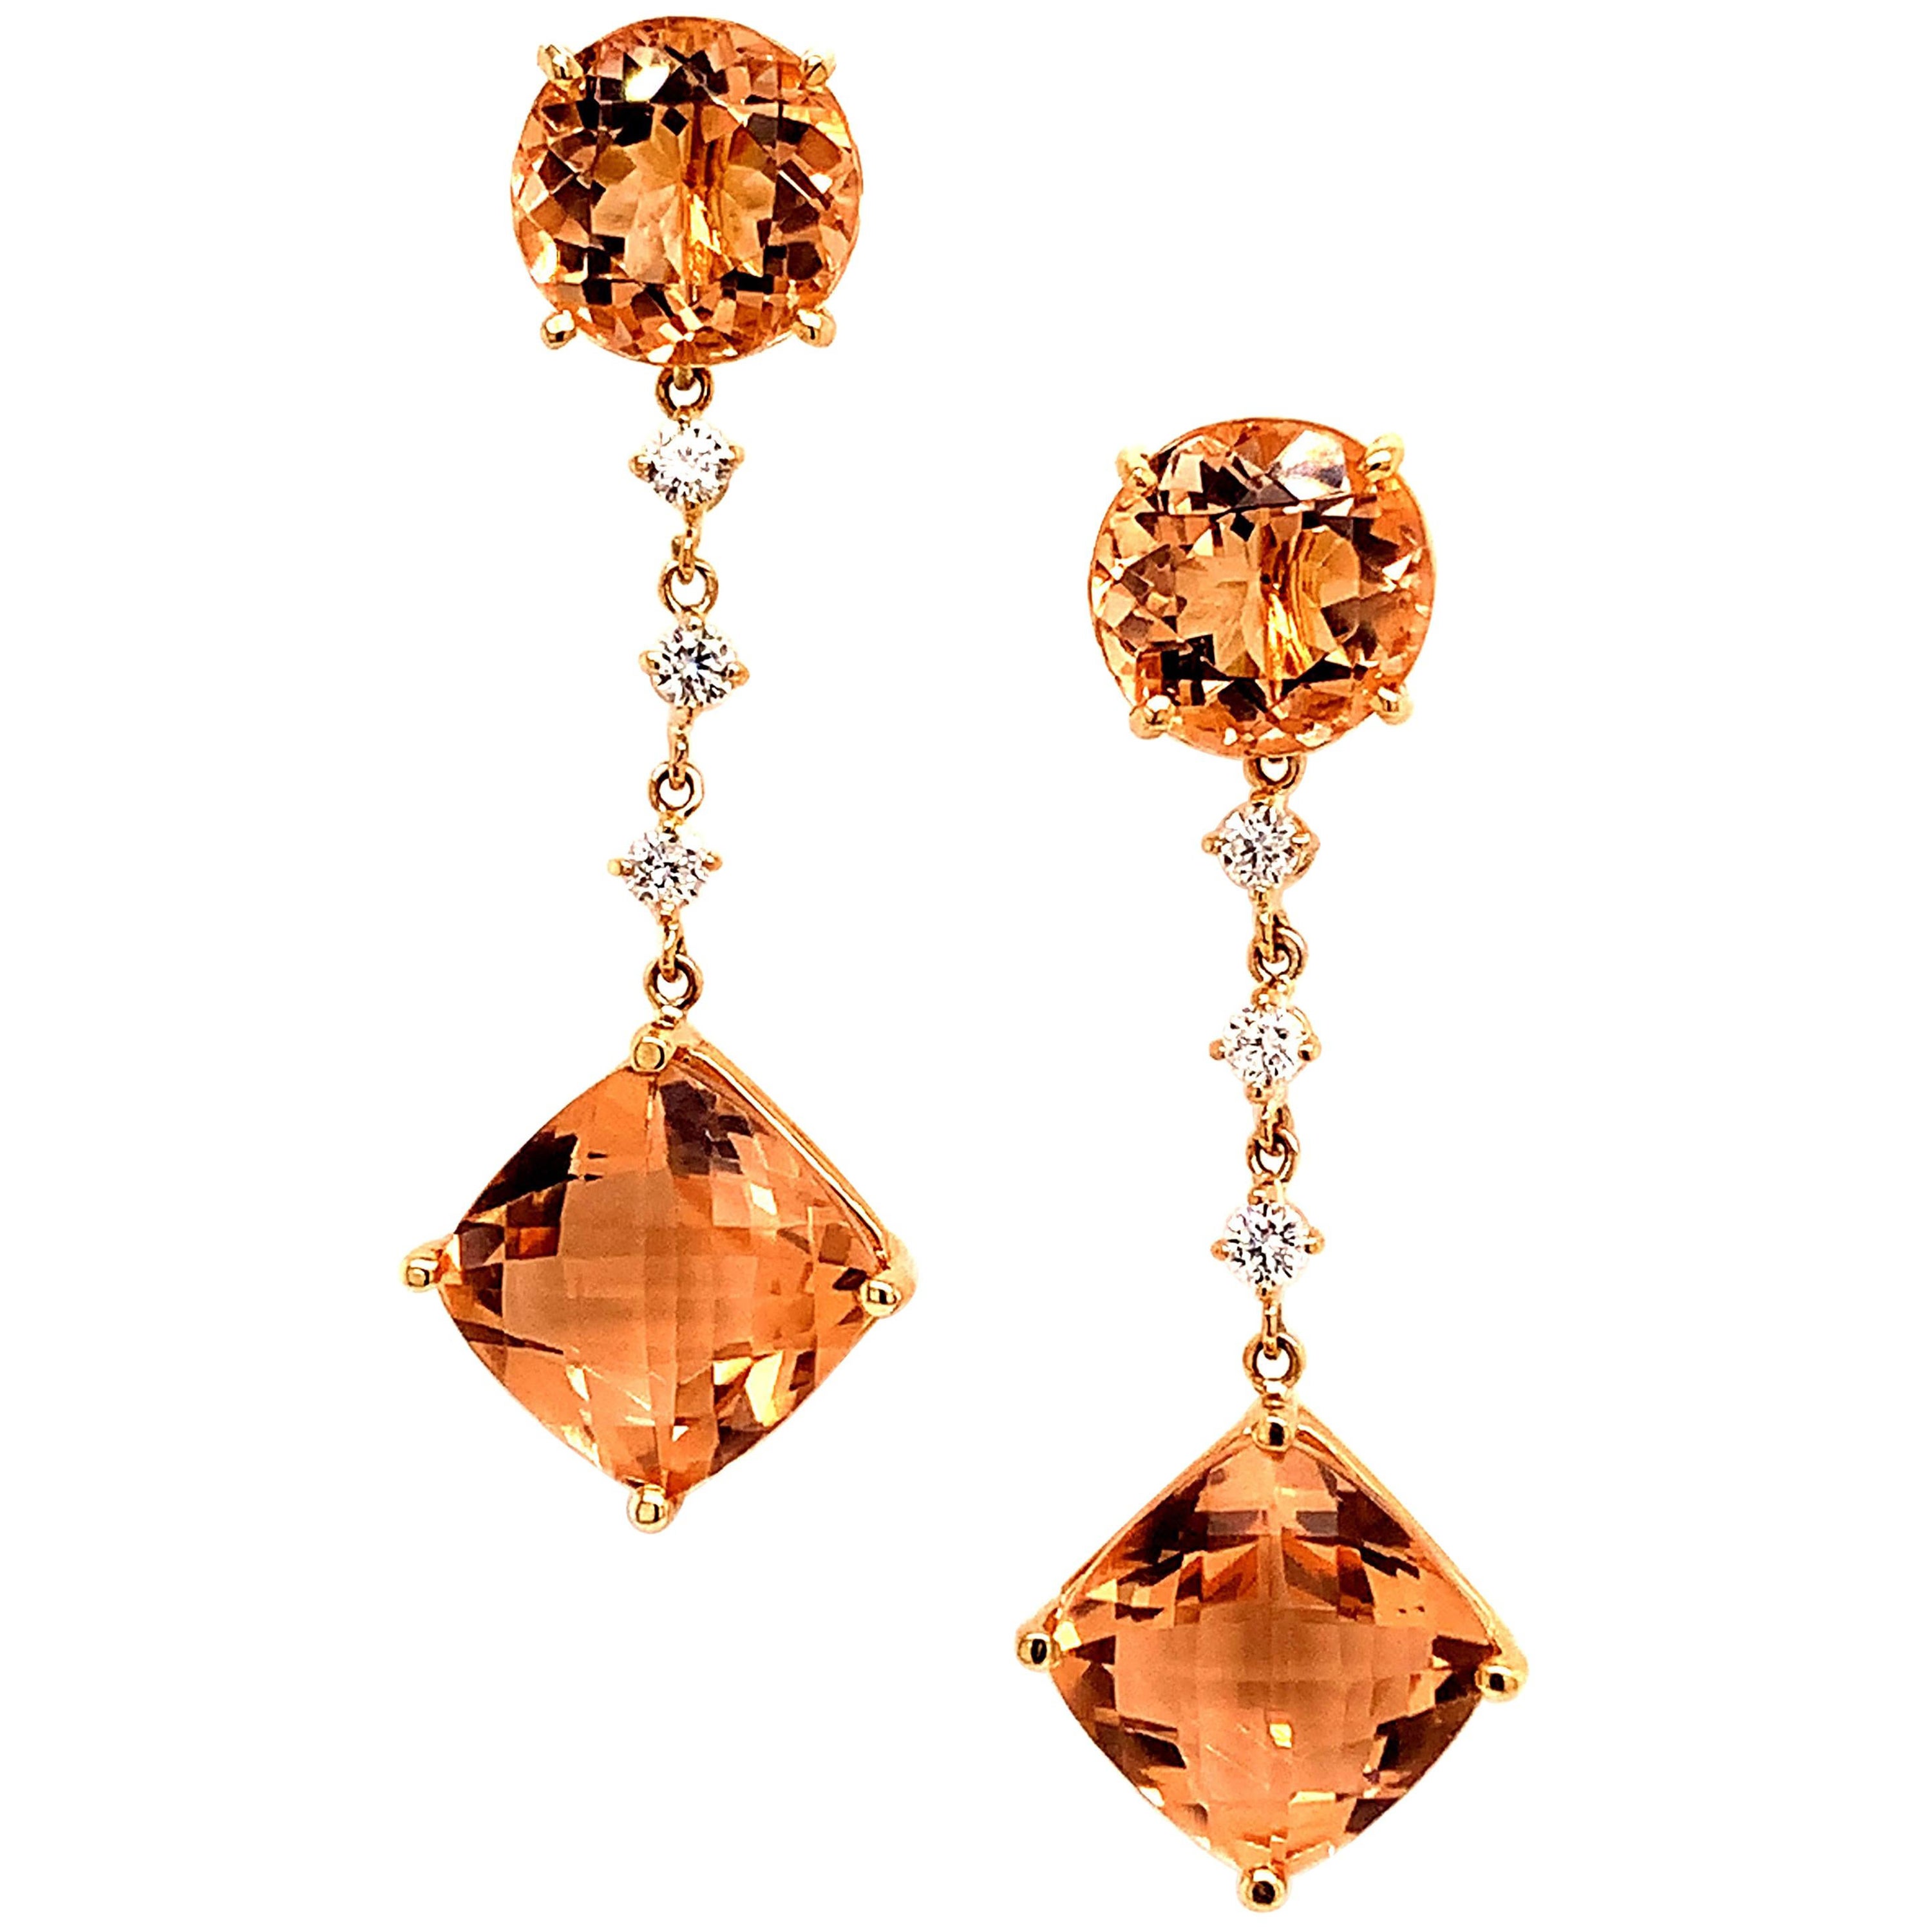 Natural Morganite Diamond Earrings 14k Gold 10.1 TCW Certified